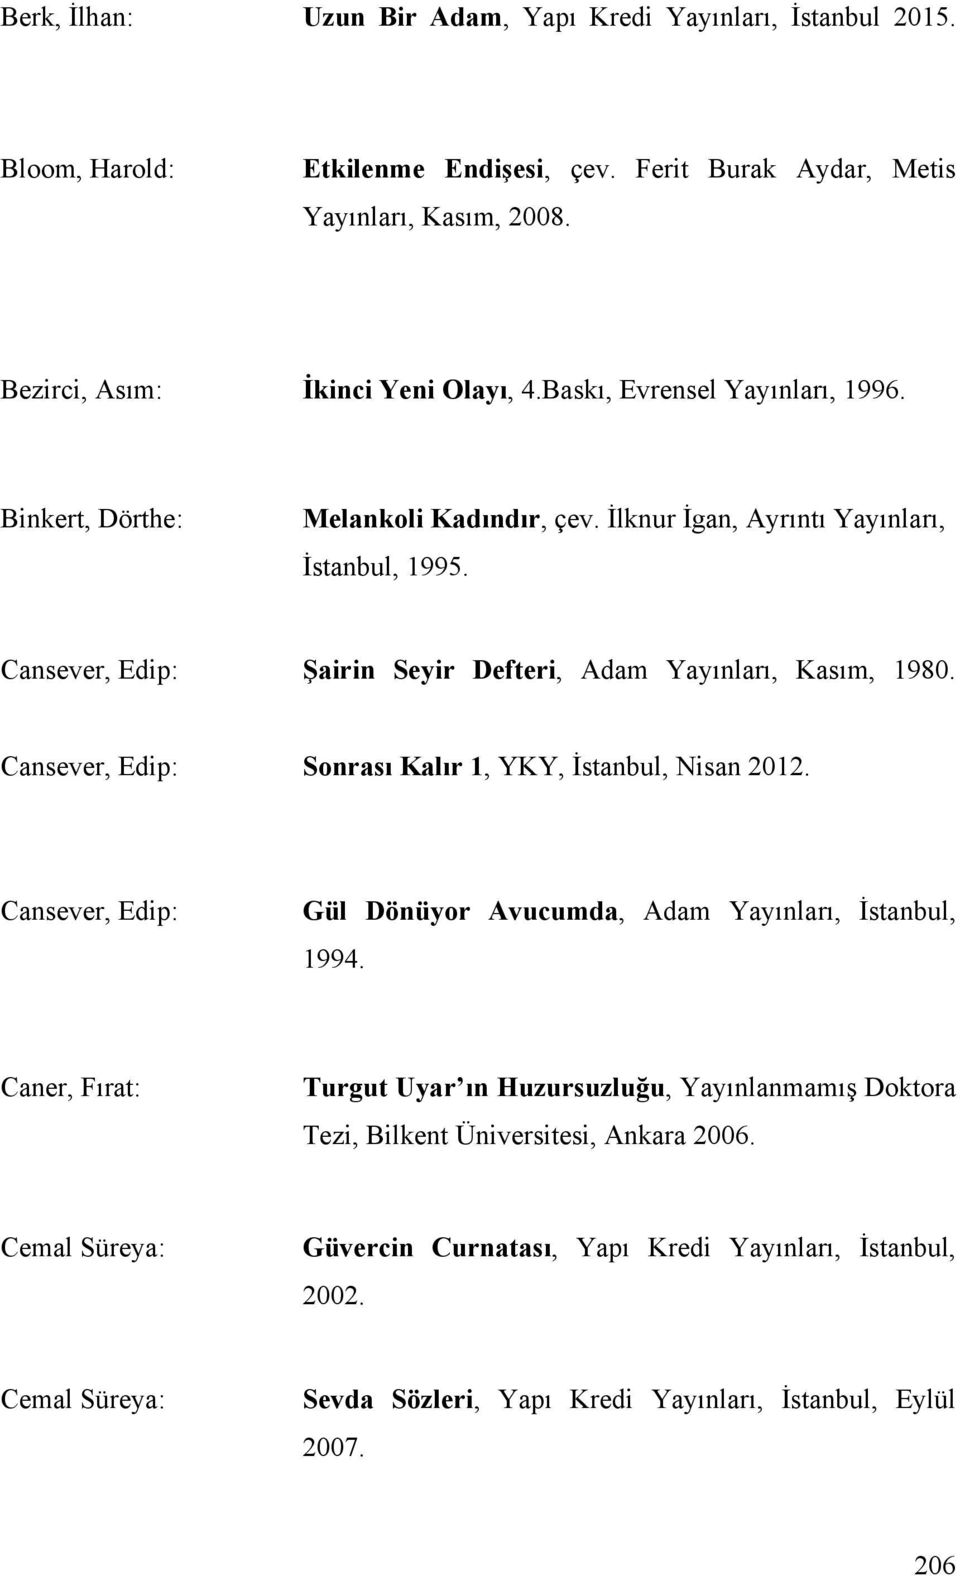 Cansever, Edip: Sonrası Kalır 1, YKY, İstanbul, Nisan 2012. Cansever, Edip: Gül Dönüyor Avucumda, Adam Yayınları, İstanbul, 1994.